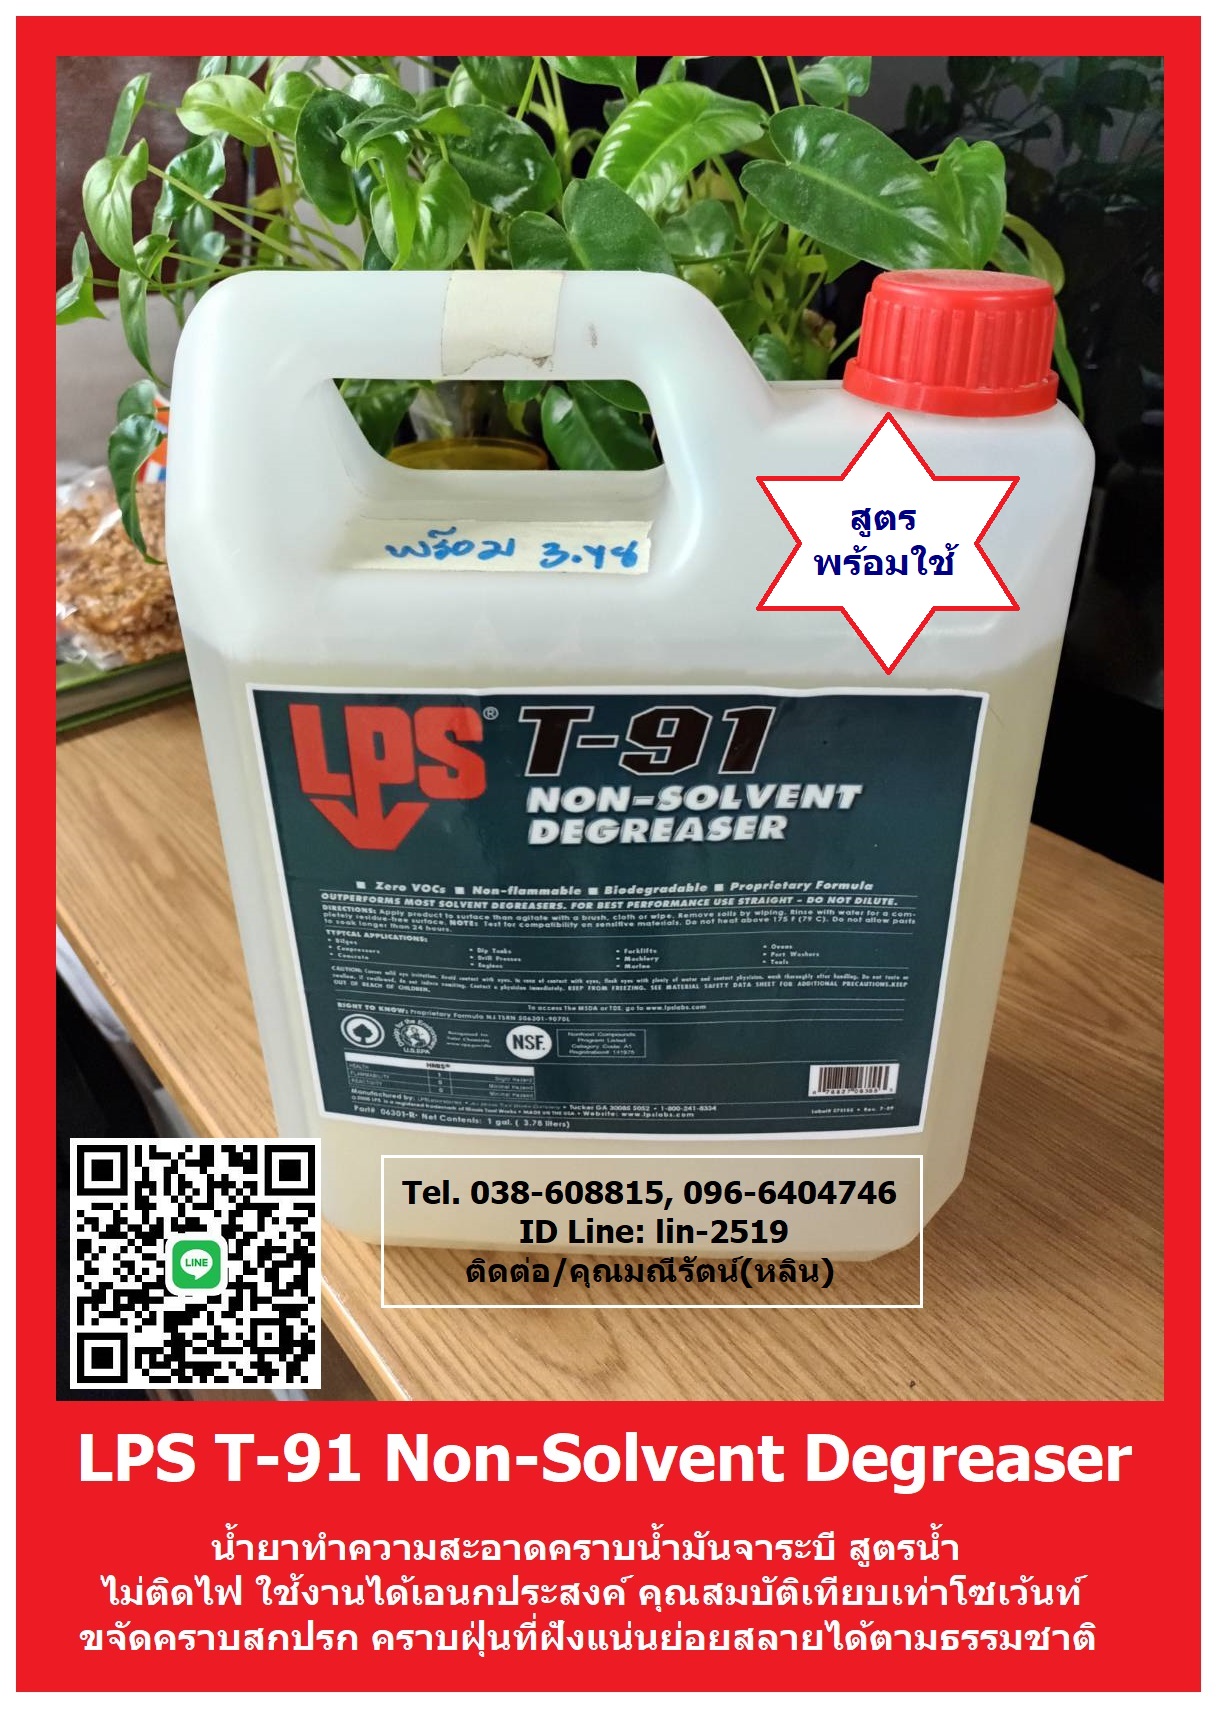 รูปภาพ น้ำยาทำความสะอาดคราบน้ำมัน LPS T-91 Non-Solvent Degreaser มีประสิทธิภาพเทียบเท่าโซเว้นท์ ย่อยสลายได้ตามธรรมชาติ ใช้ทำความสะอาดได้กับทุกวัสดุ